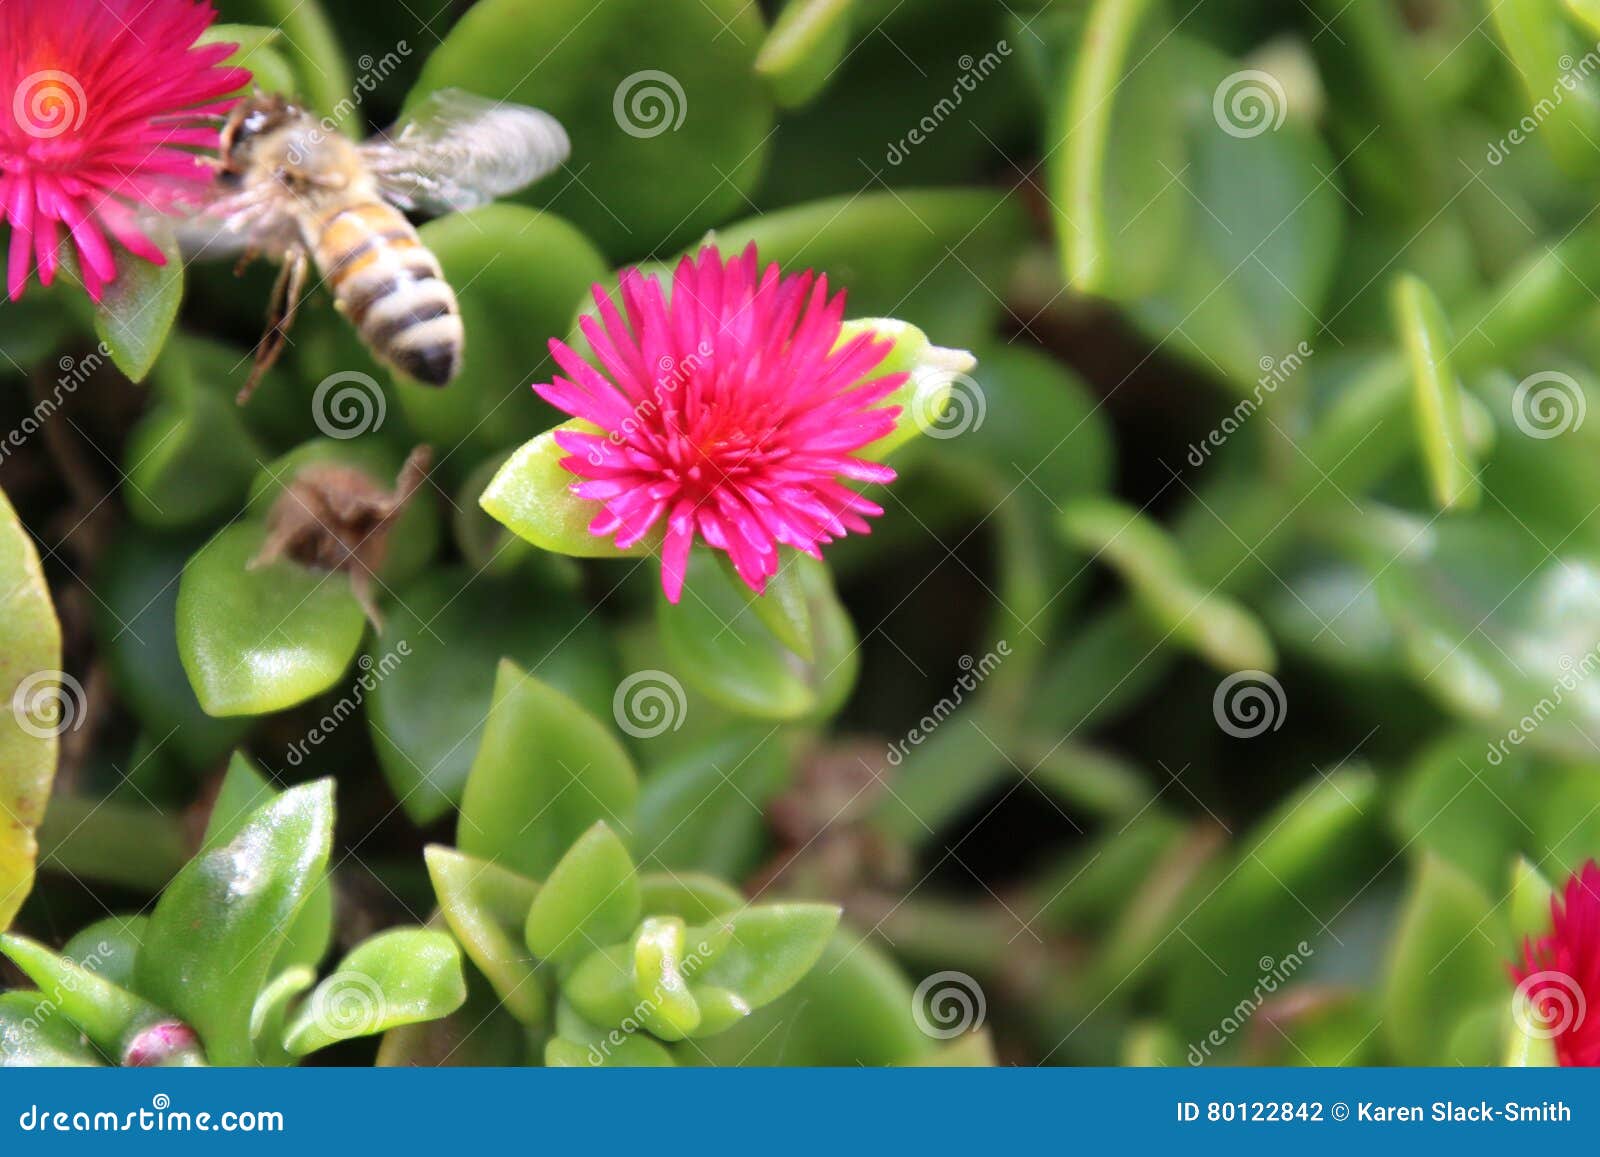 bee on heartleaf ice plant